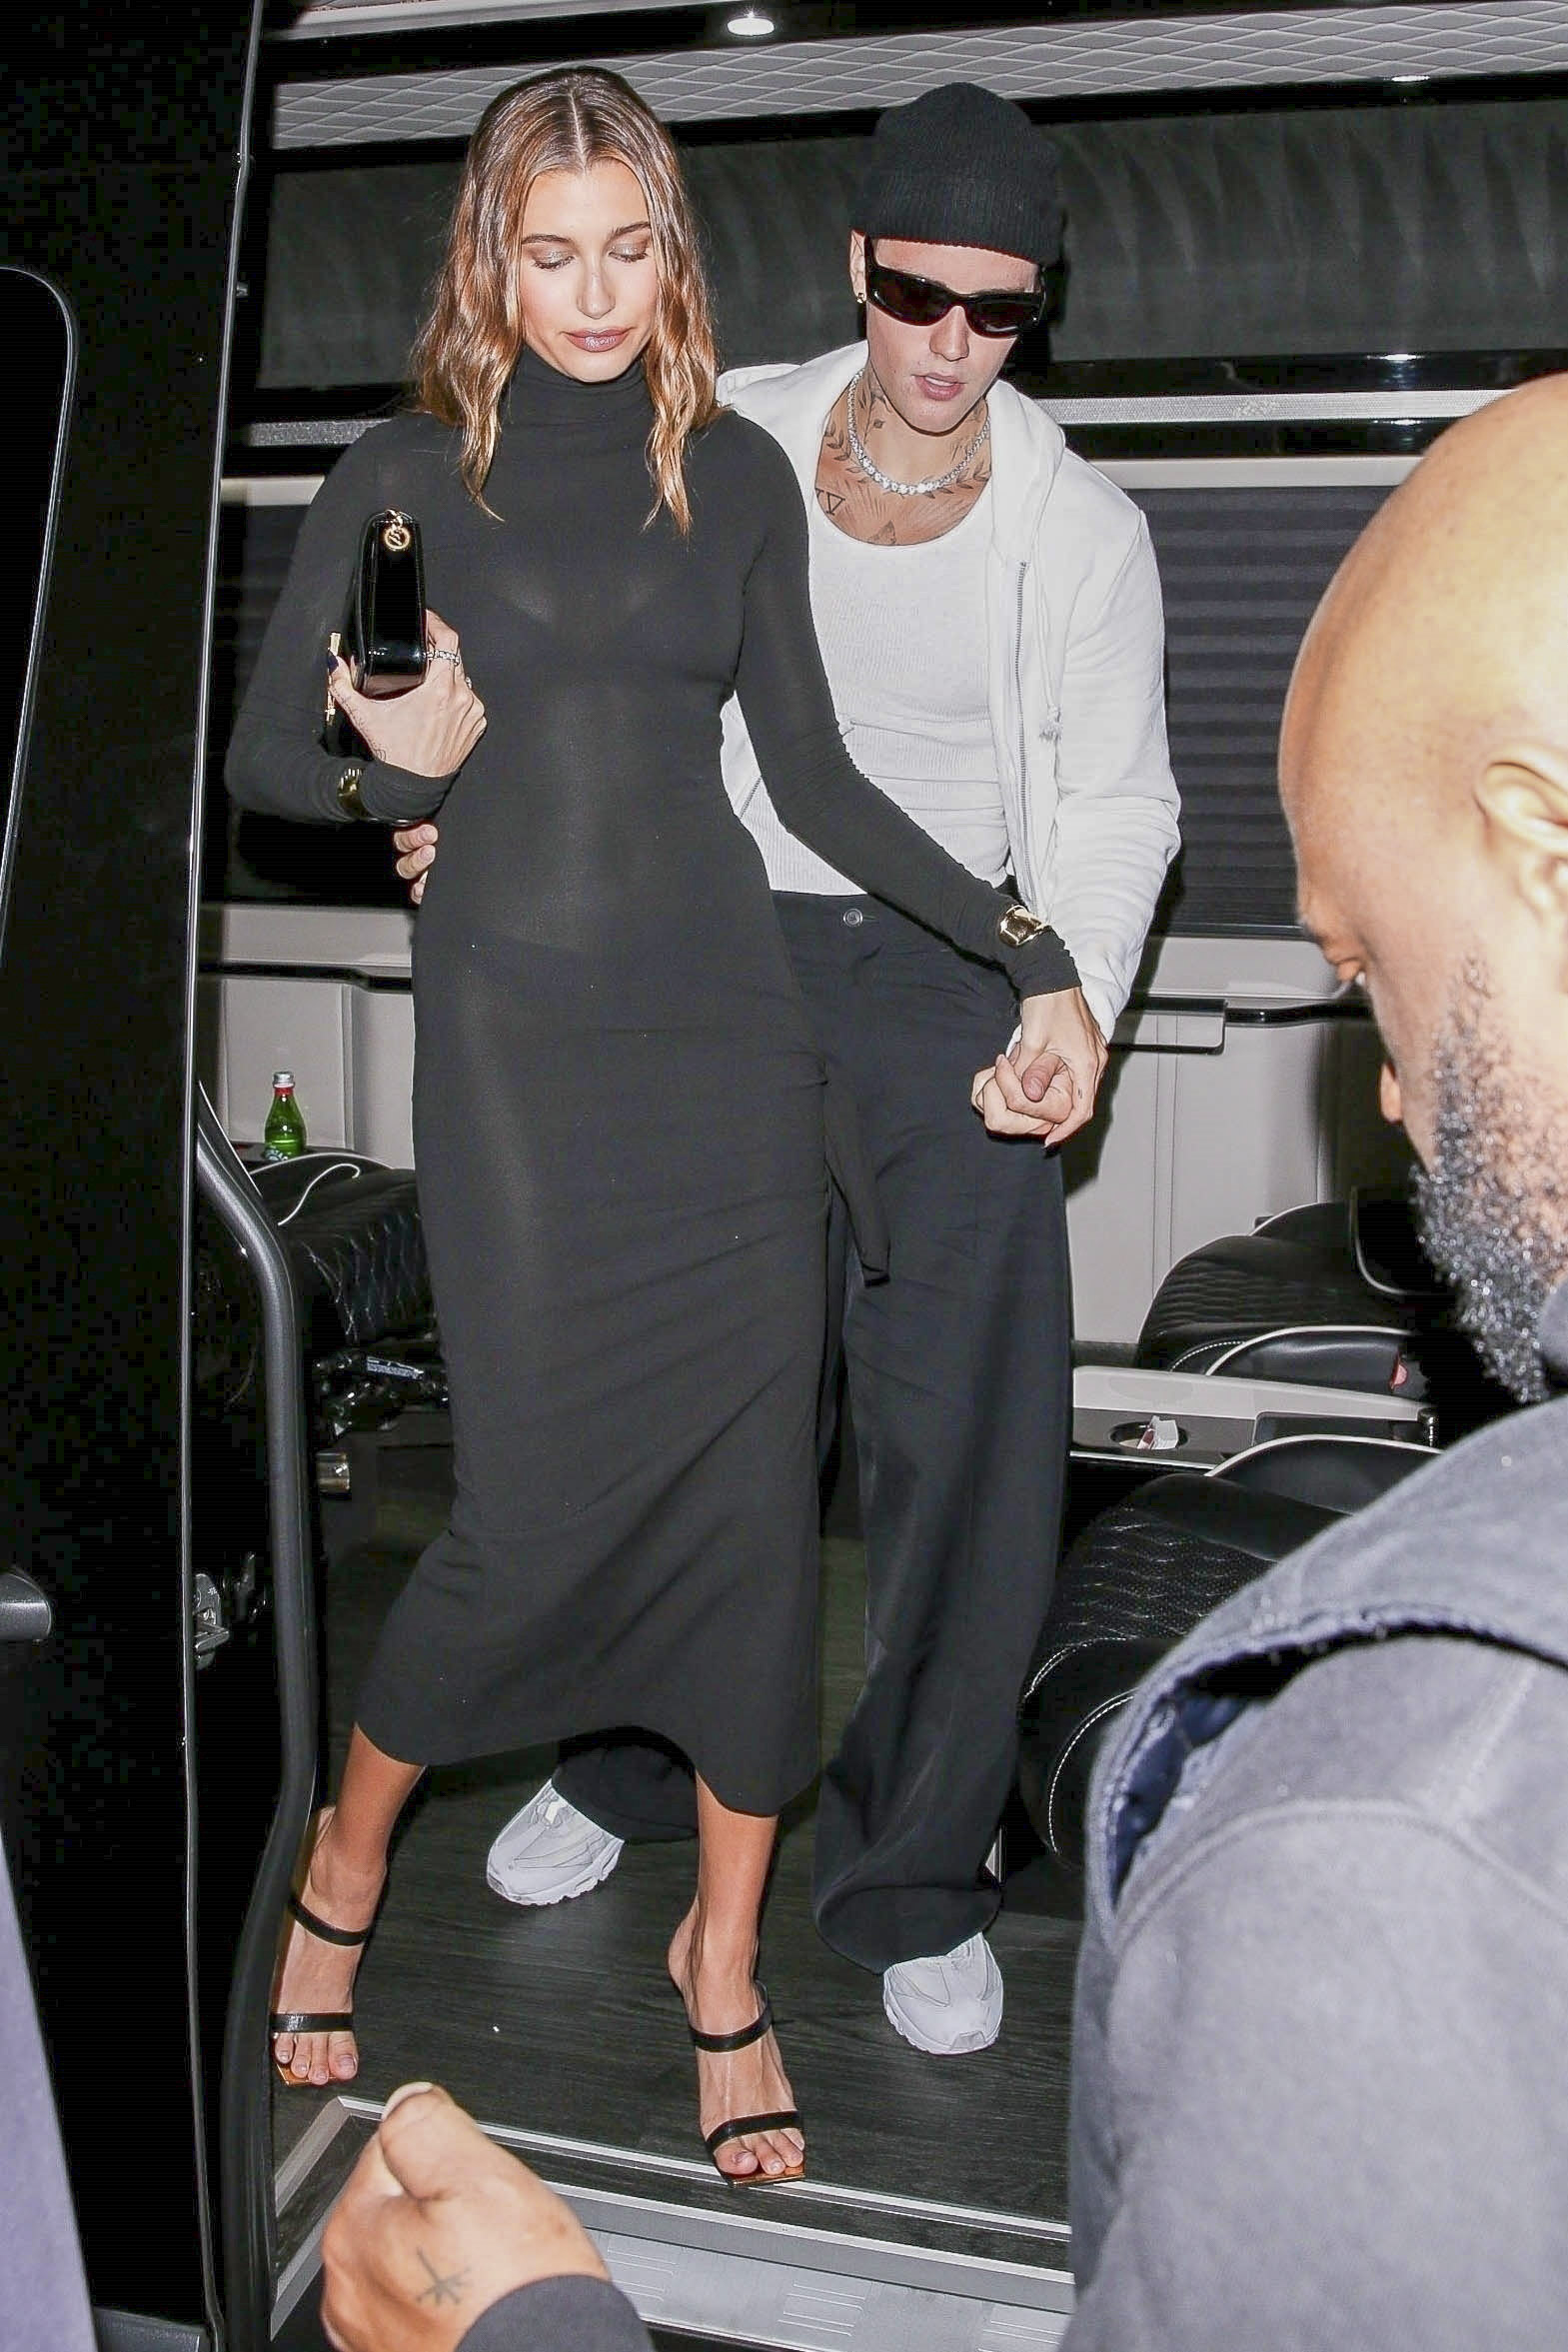 Noche romántica. Justin y Hailey Bieber fueron a comer al exclusivo restaurante The Nice Guy, en West Hollywood. La modelo lució un vestido largo negro con transparencias y el músico optó por un pantalón del mismo color y una remera blanca